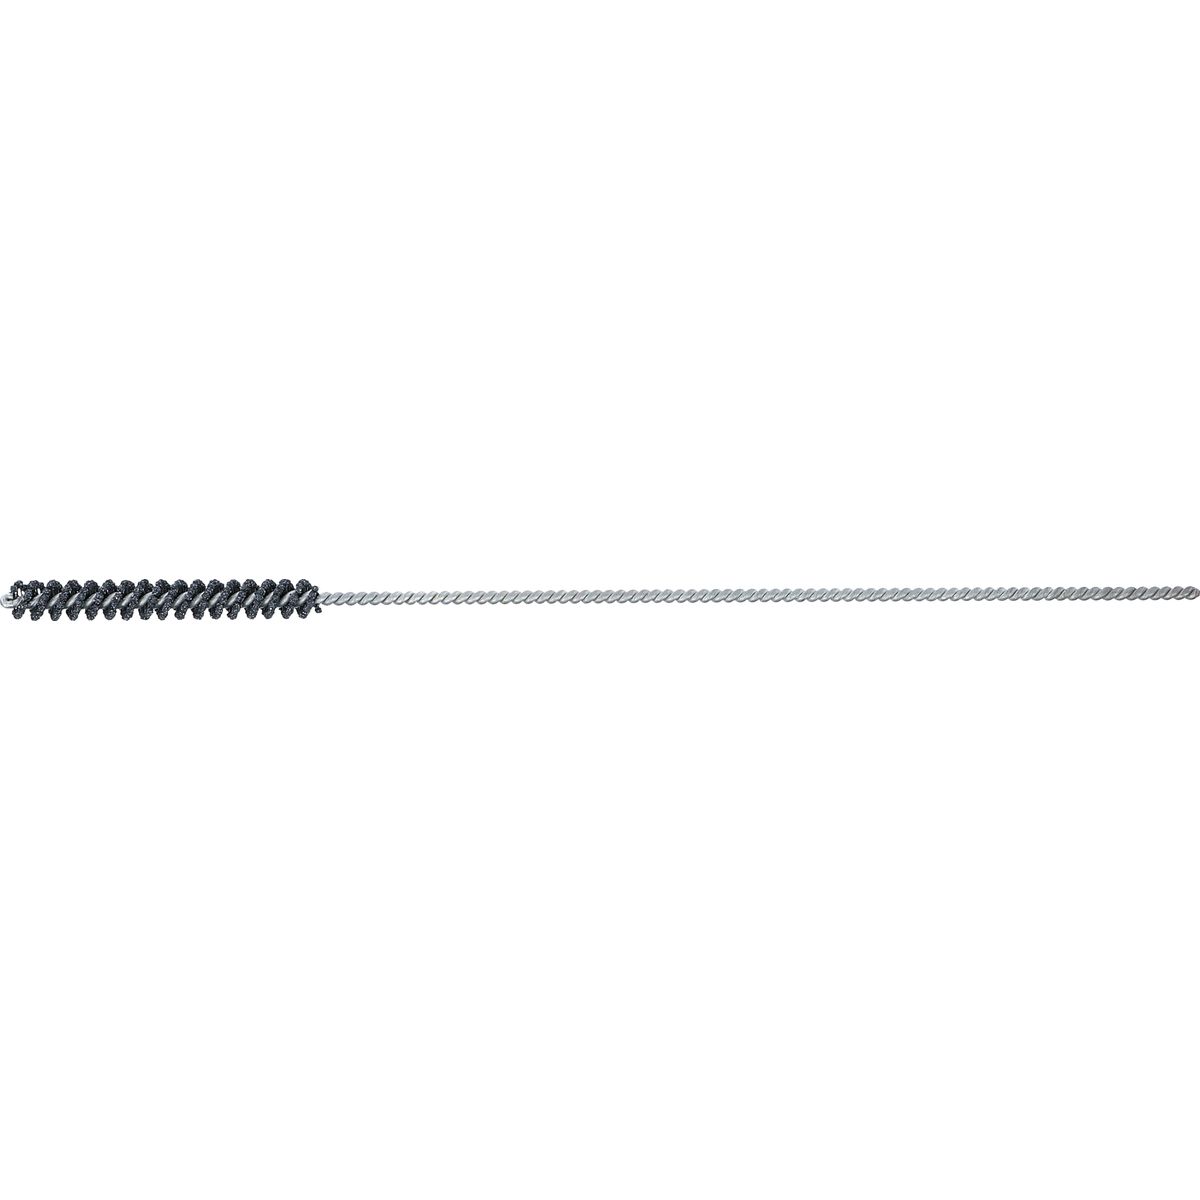 Outil de rodage | flexible | grain 120 | 7 - 7,5 mm